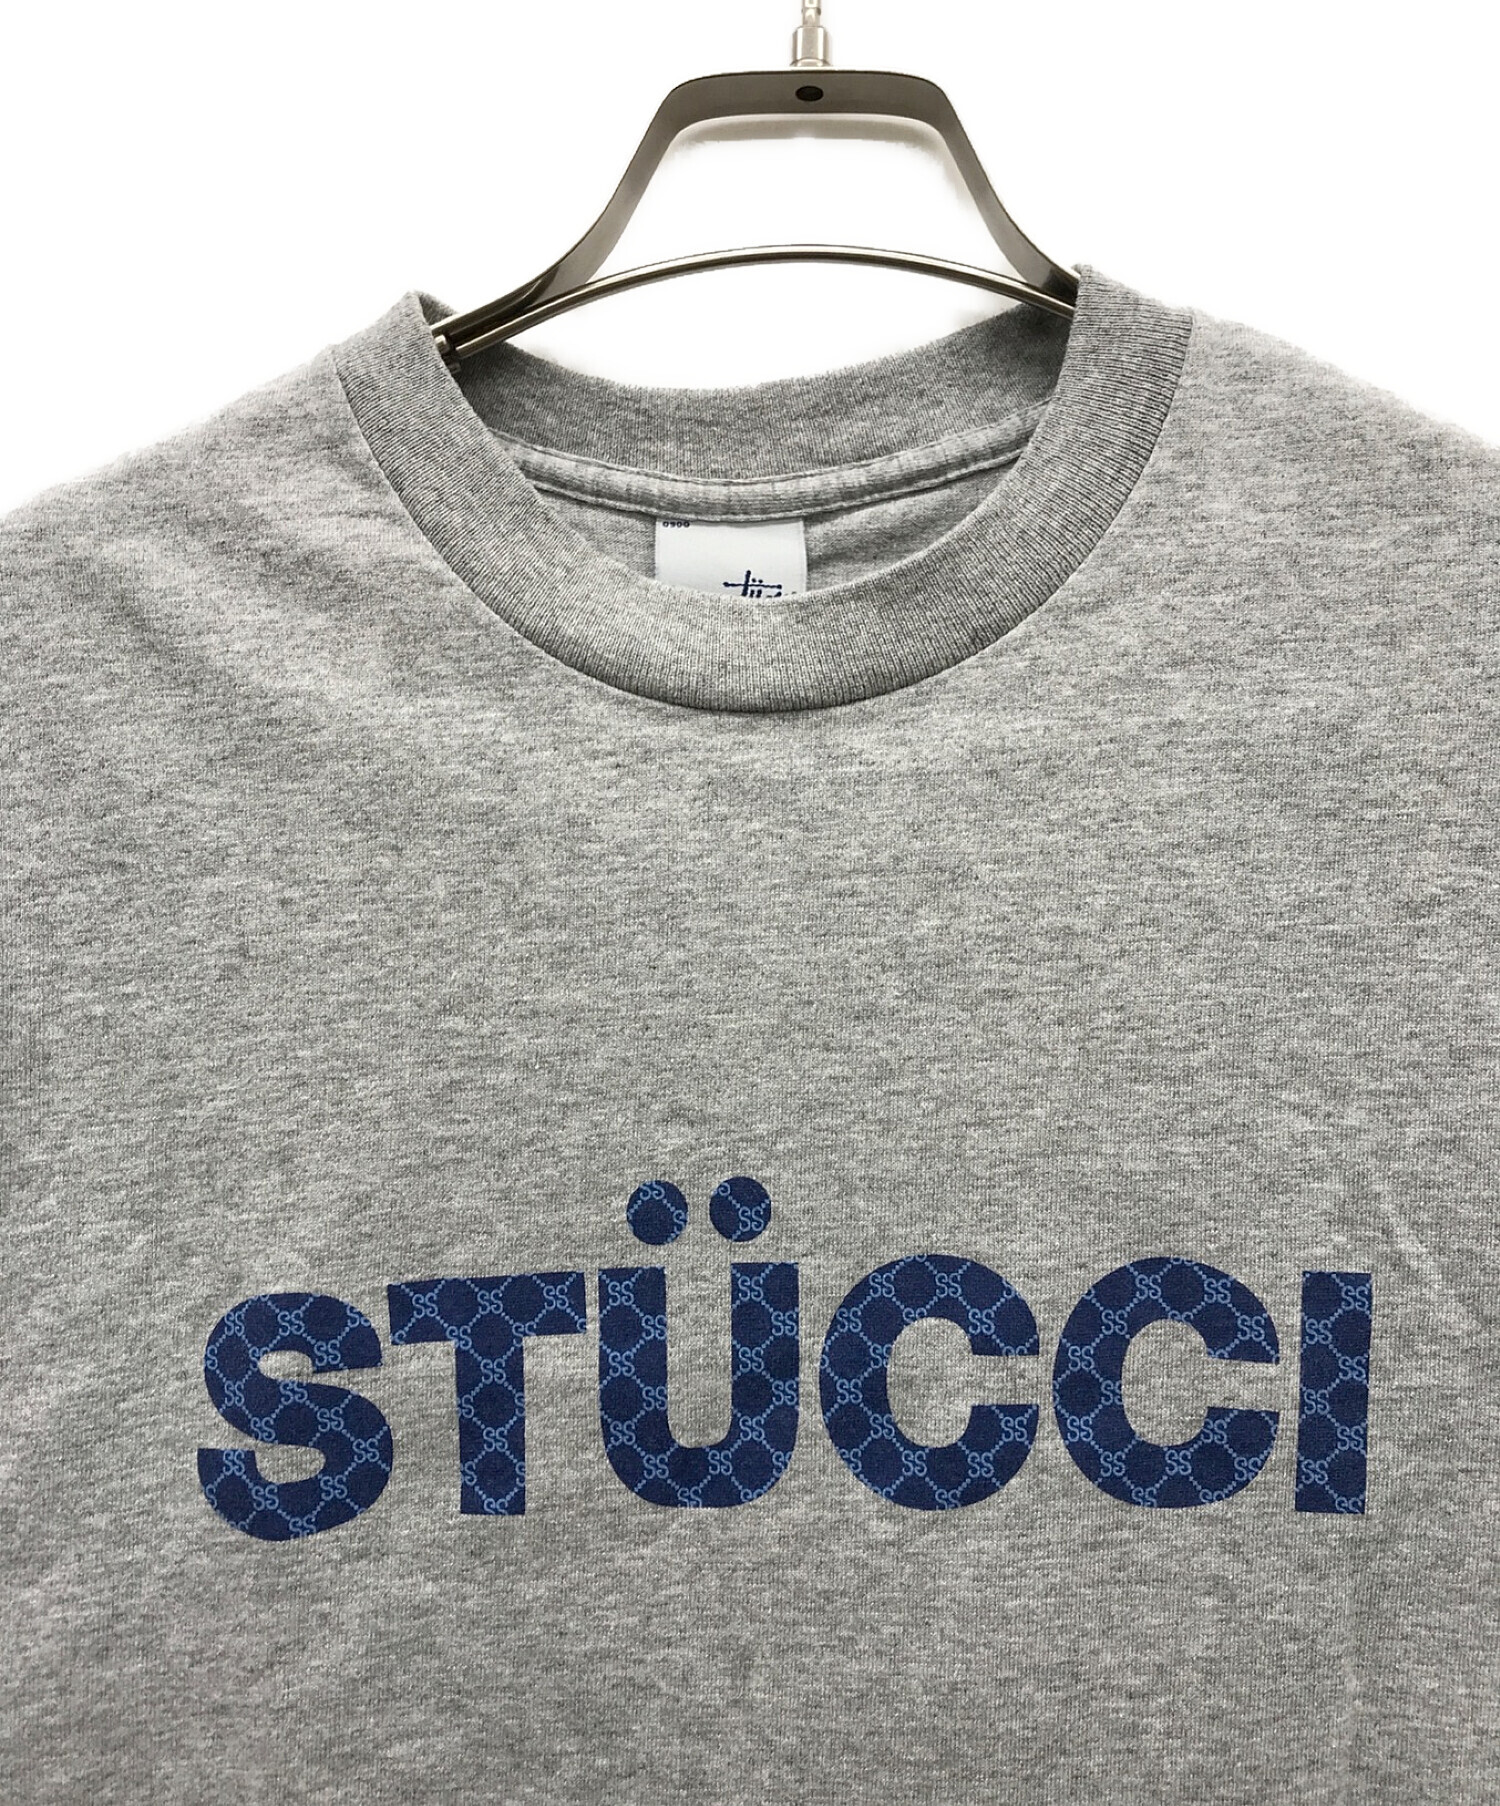 stussy (ステューシー) 90sモノグラムプリントTシャツ グレー サイズ:S